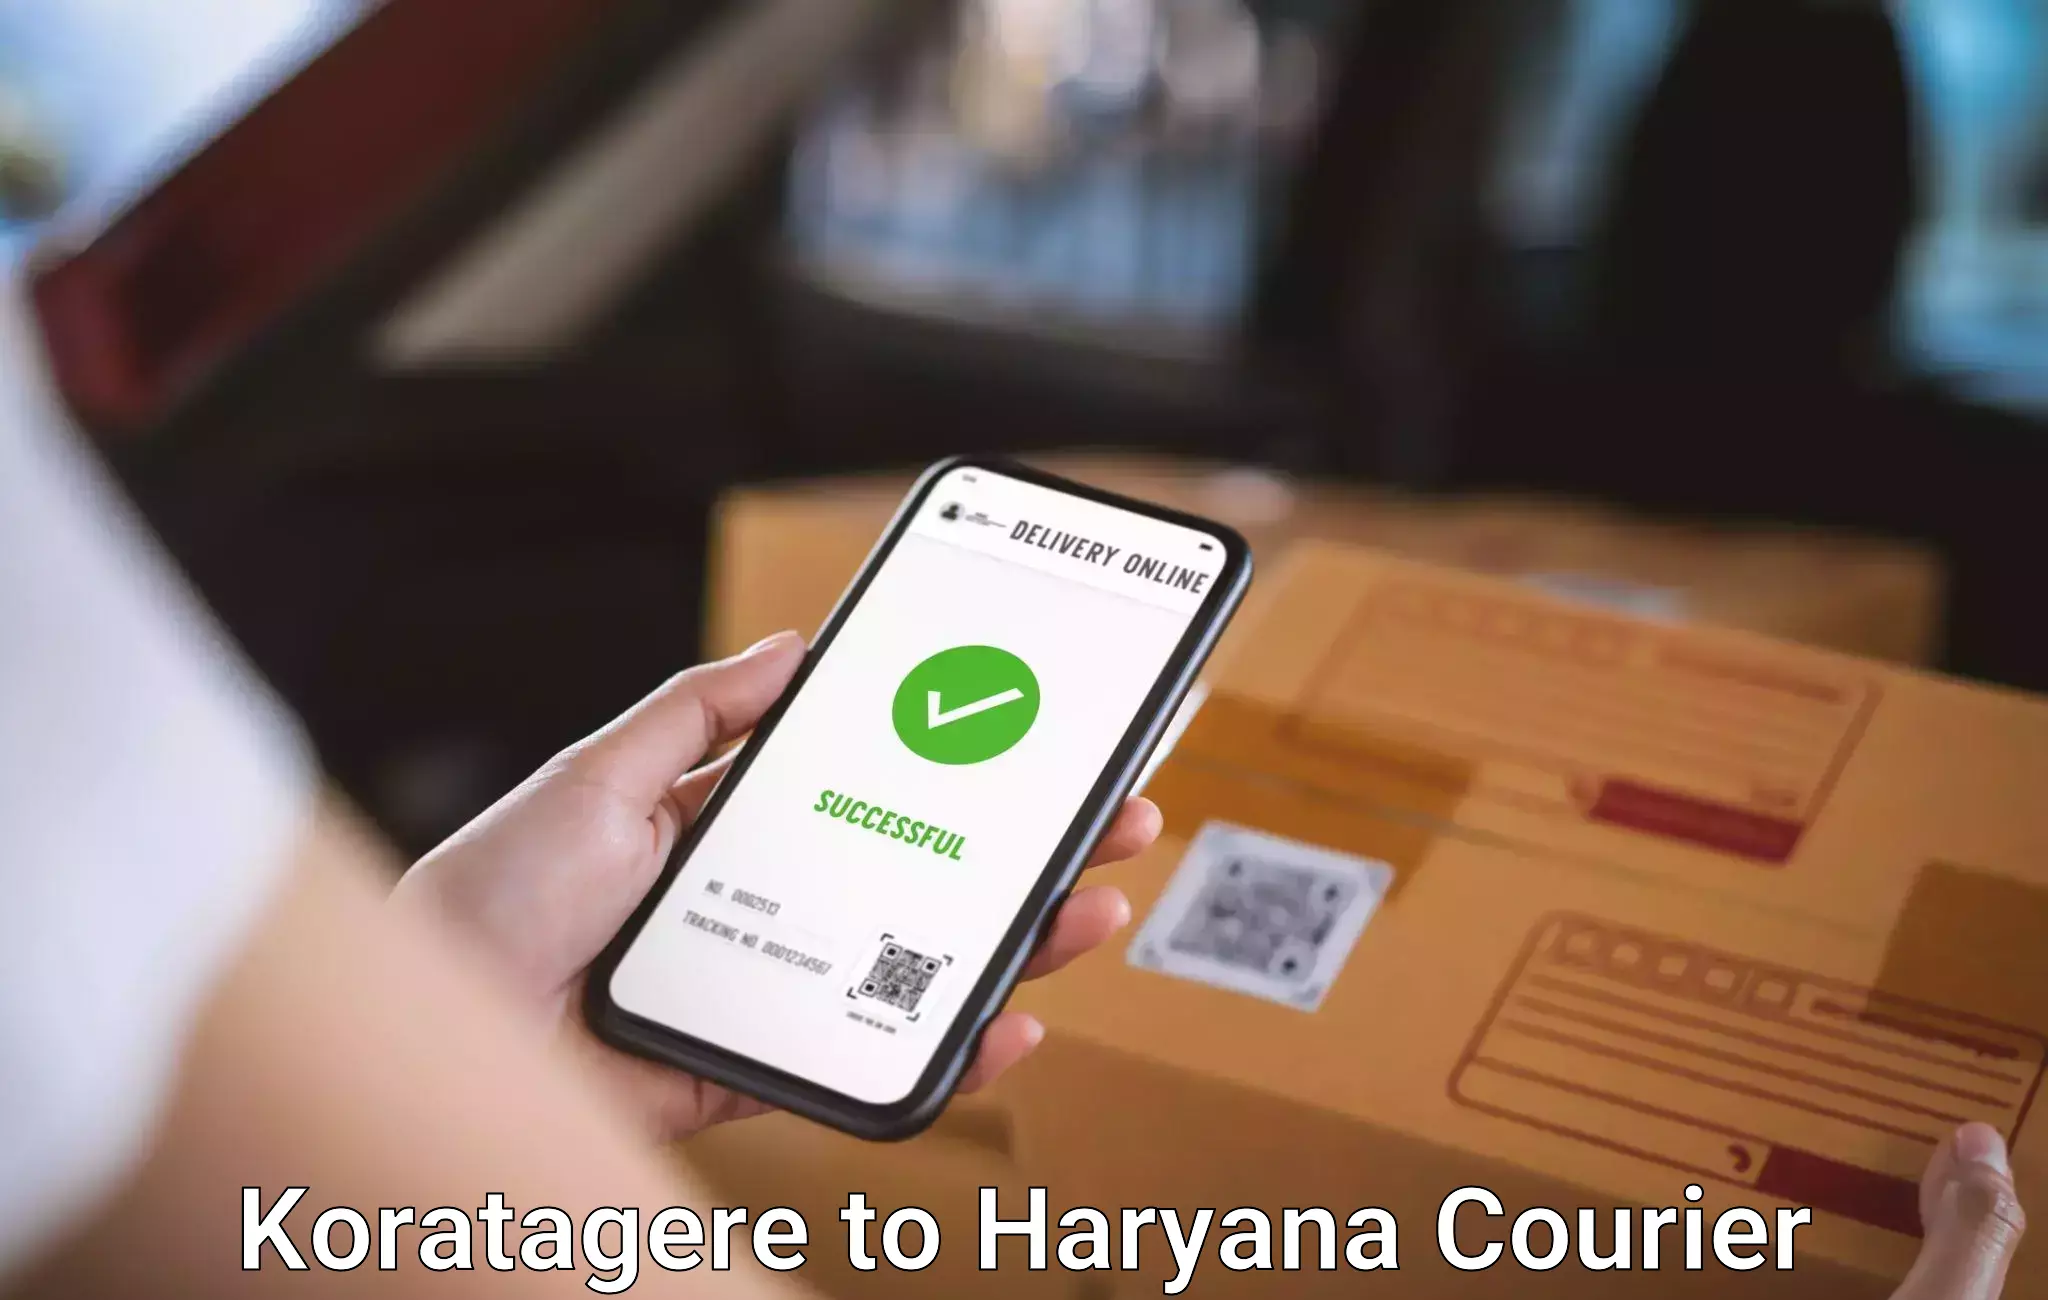 Luggage delivery system Koratagere to Samalkha